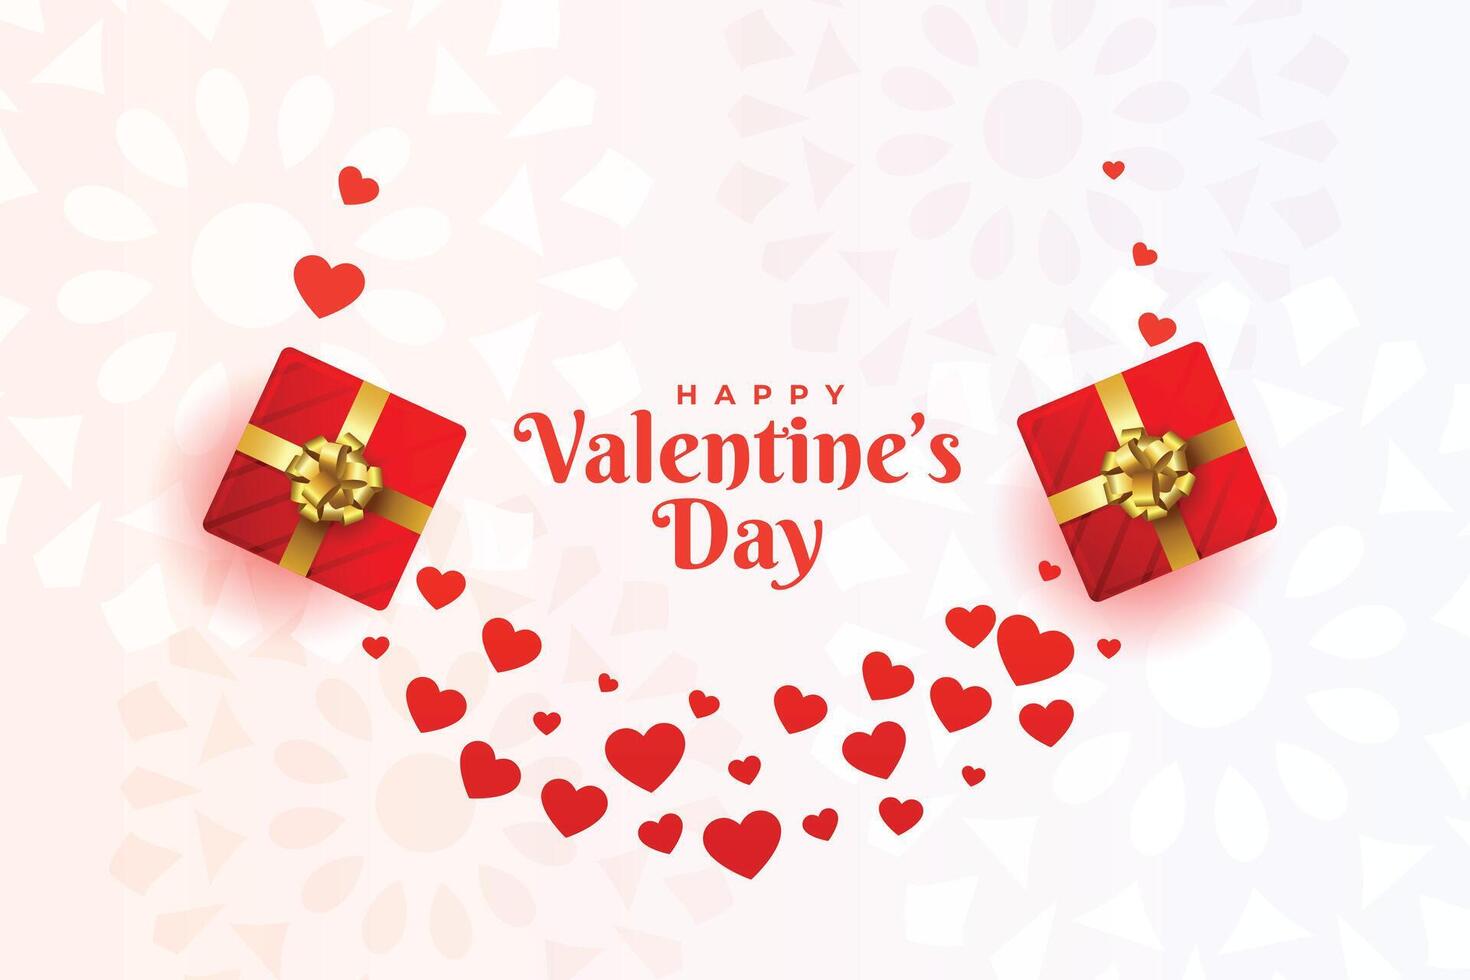 Valentinsgrüße Tag Gruß mit Herzen und Geschenk Kisten vektor